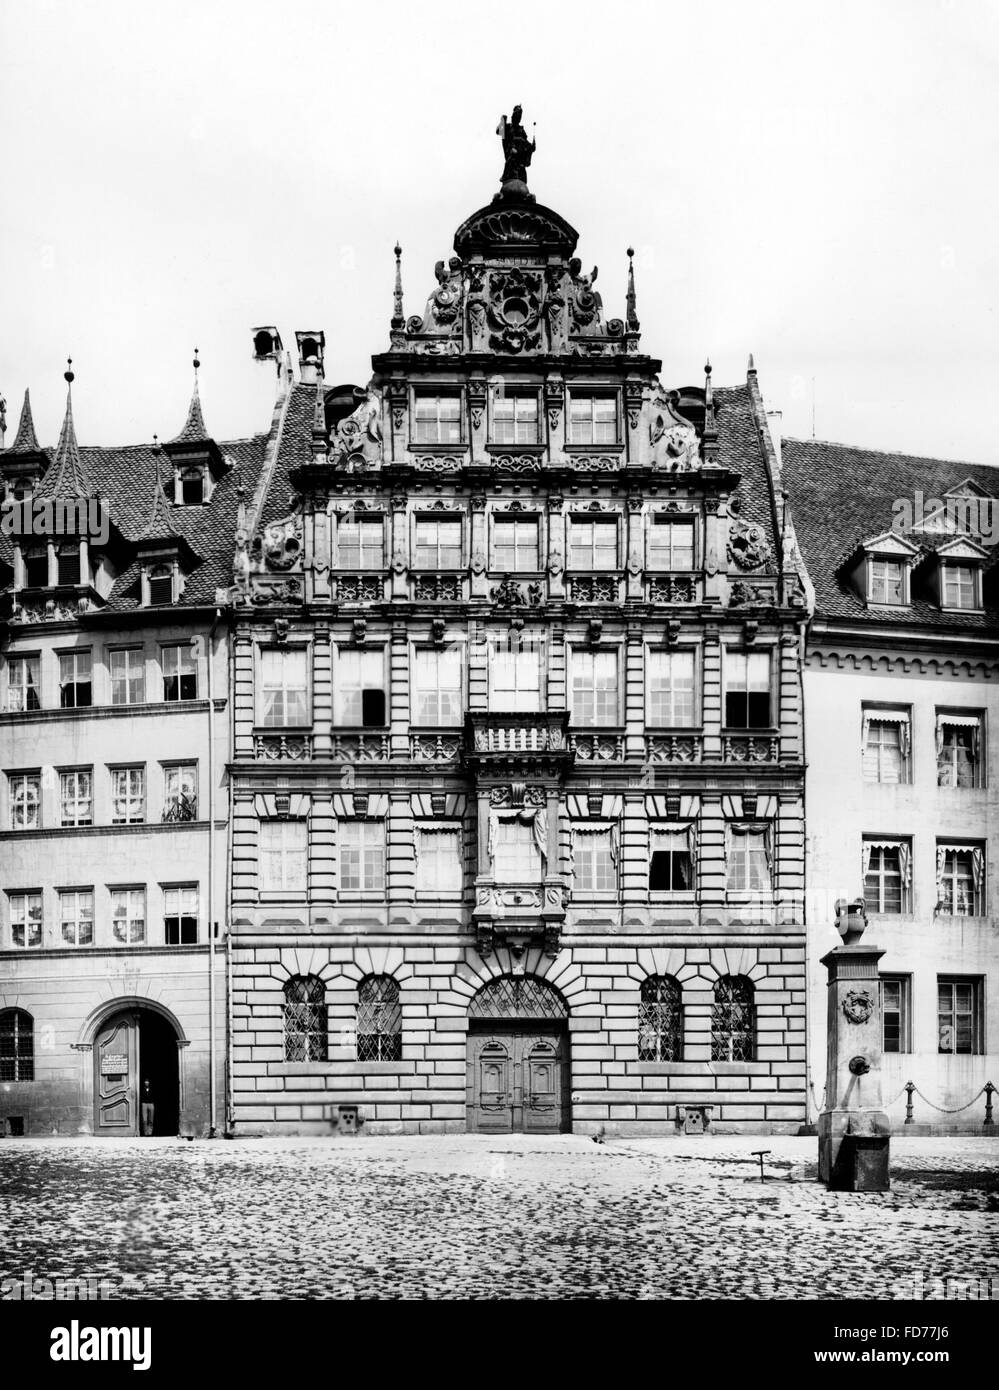 The Pellerhaus in Nuremberg Stock Photo